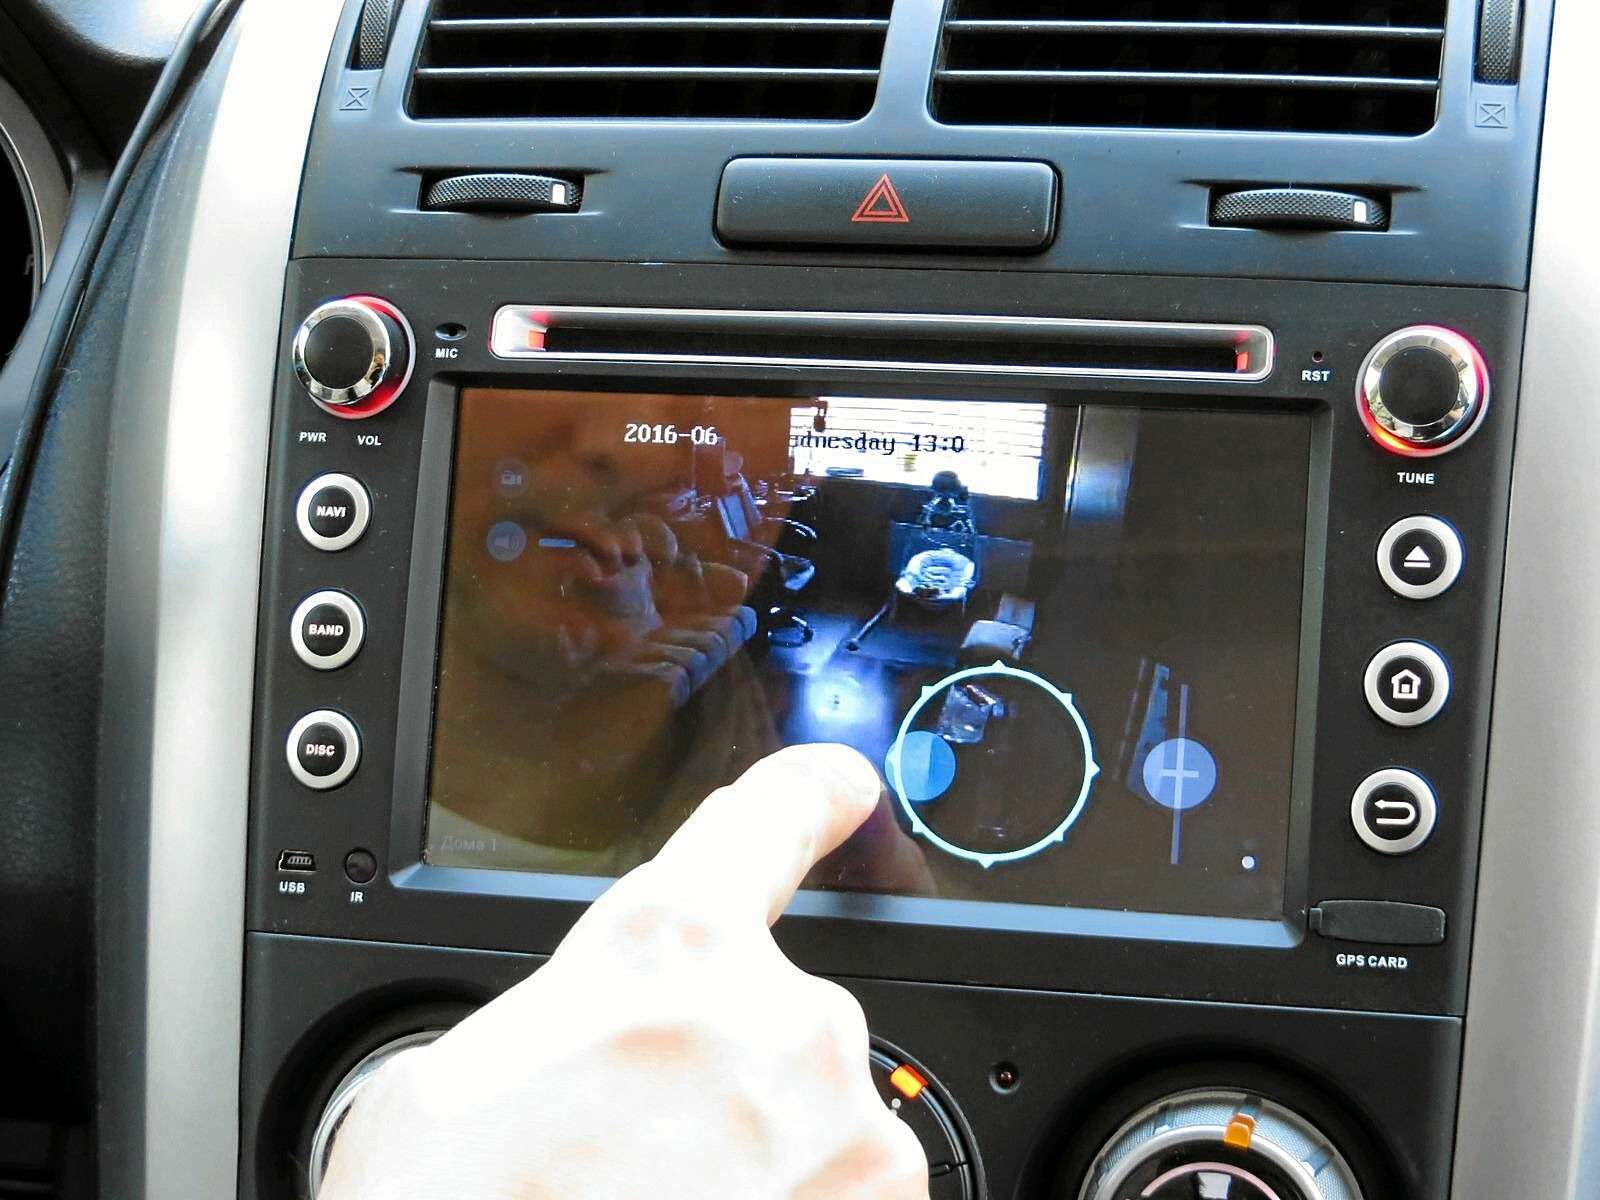 После доработки программы tinyCamMon у Дмитрия появилась возможность управлять системой домашнего видеонаблюдения прямо с центрального дисплея автомобиля.